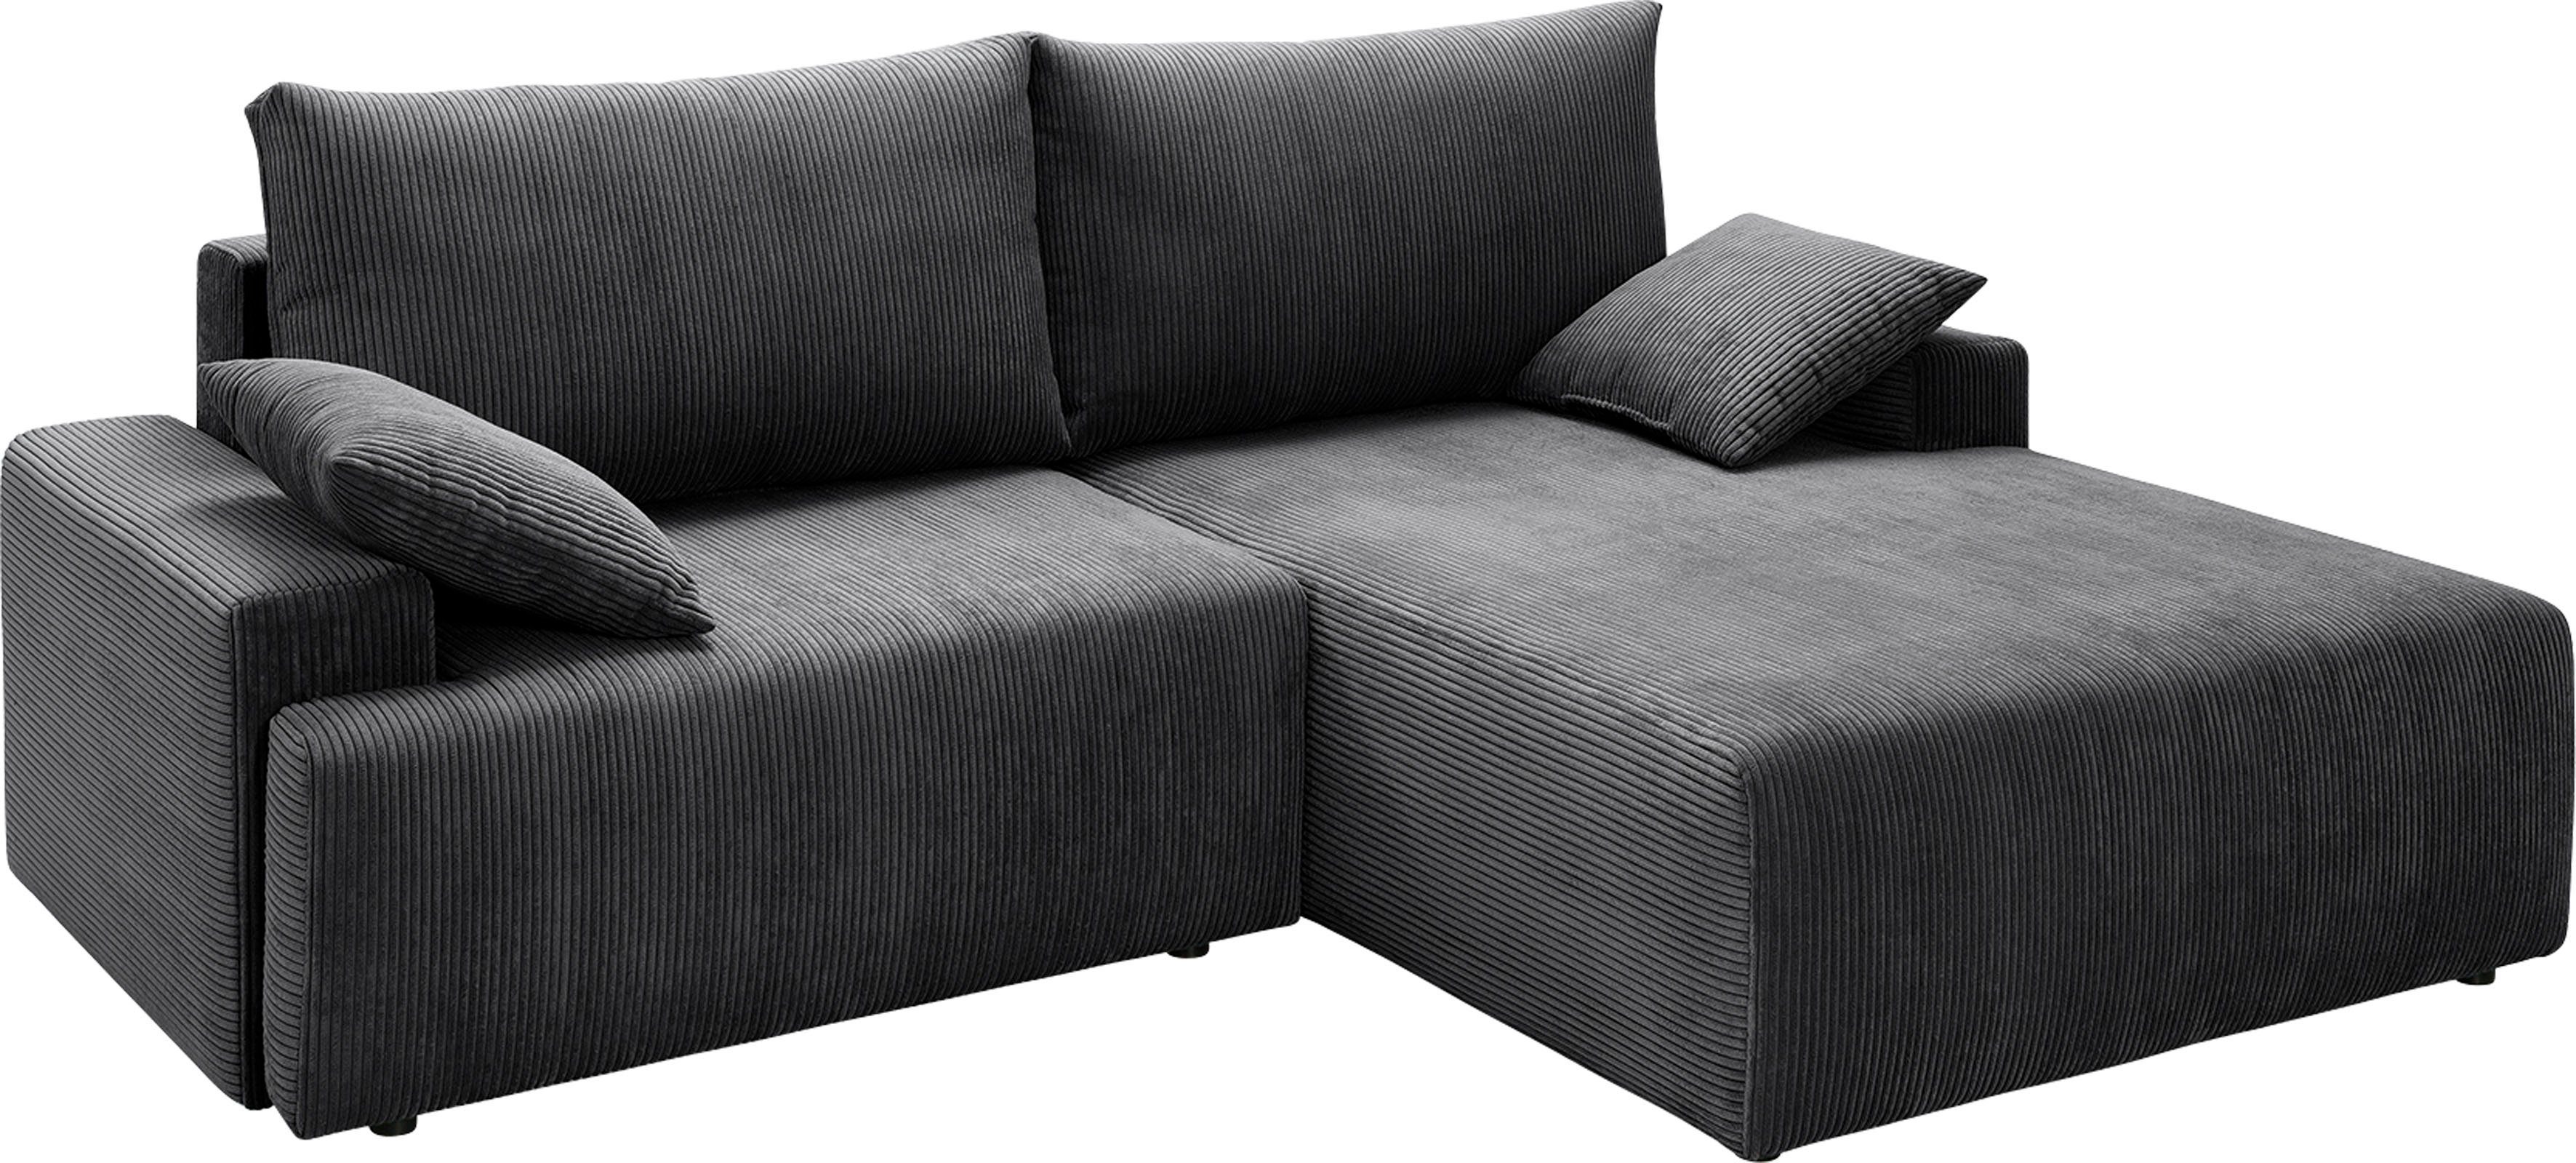 Bettfunktion sofa Cord-Farben Bettkasten anthrazith fashion exxpo in und verschiedenen inklusive Ecksofa - Orinoko,